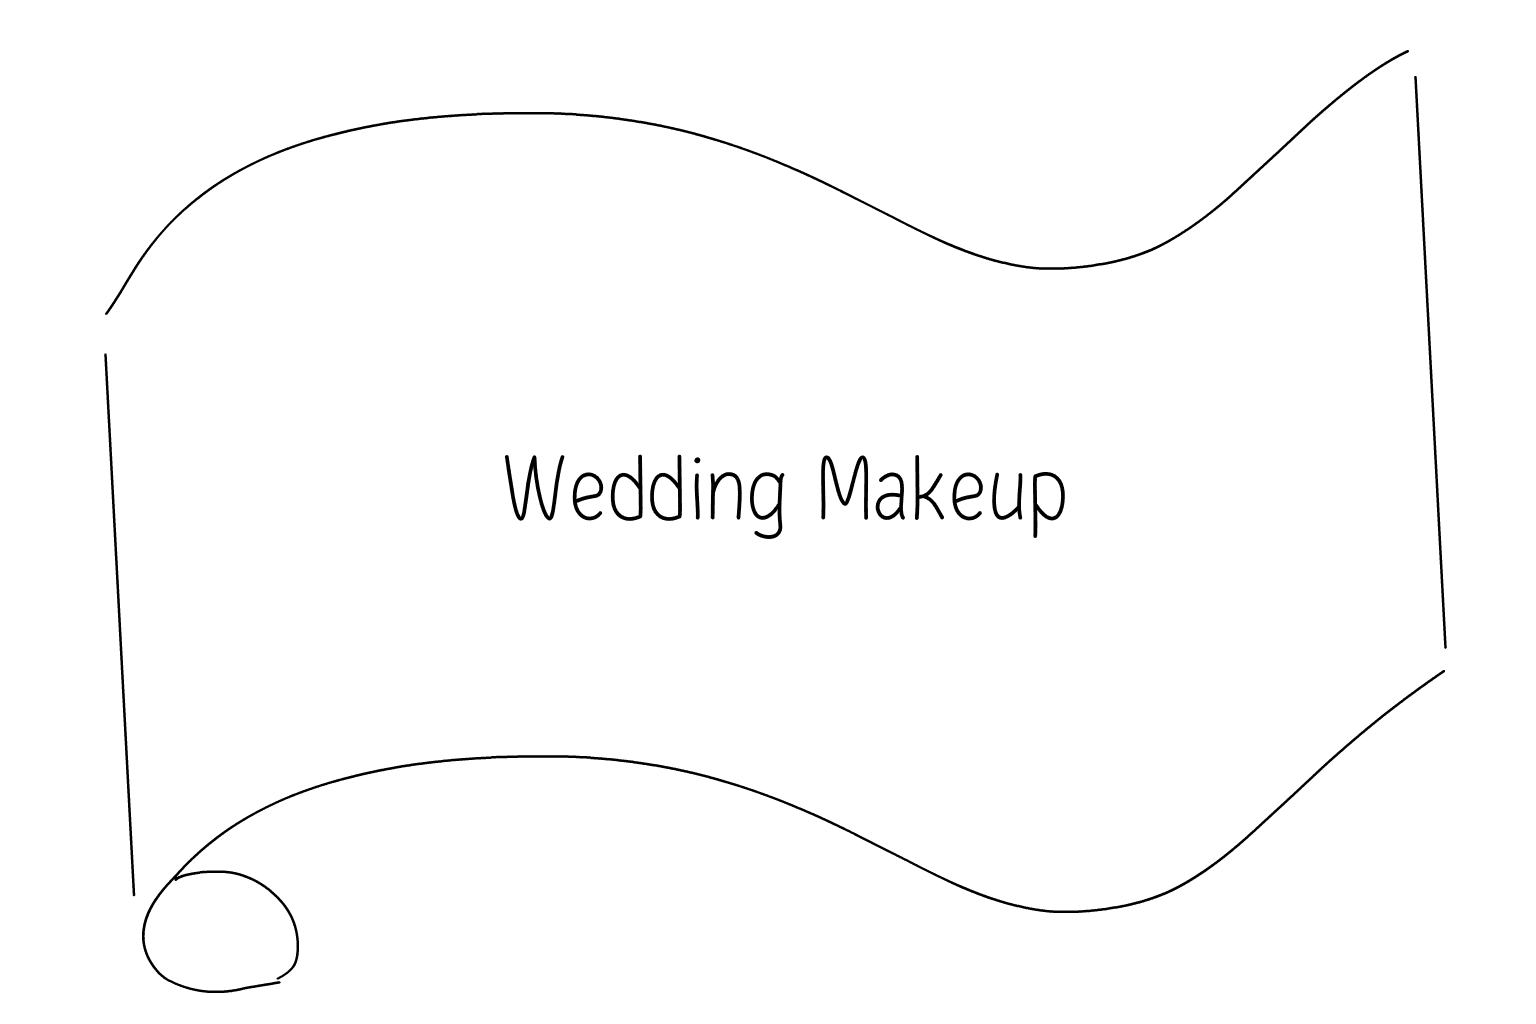 Illustration of Bridal Makeup Artists